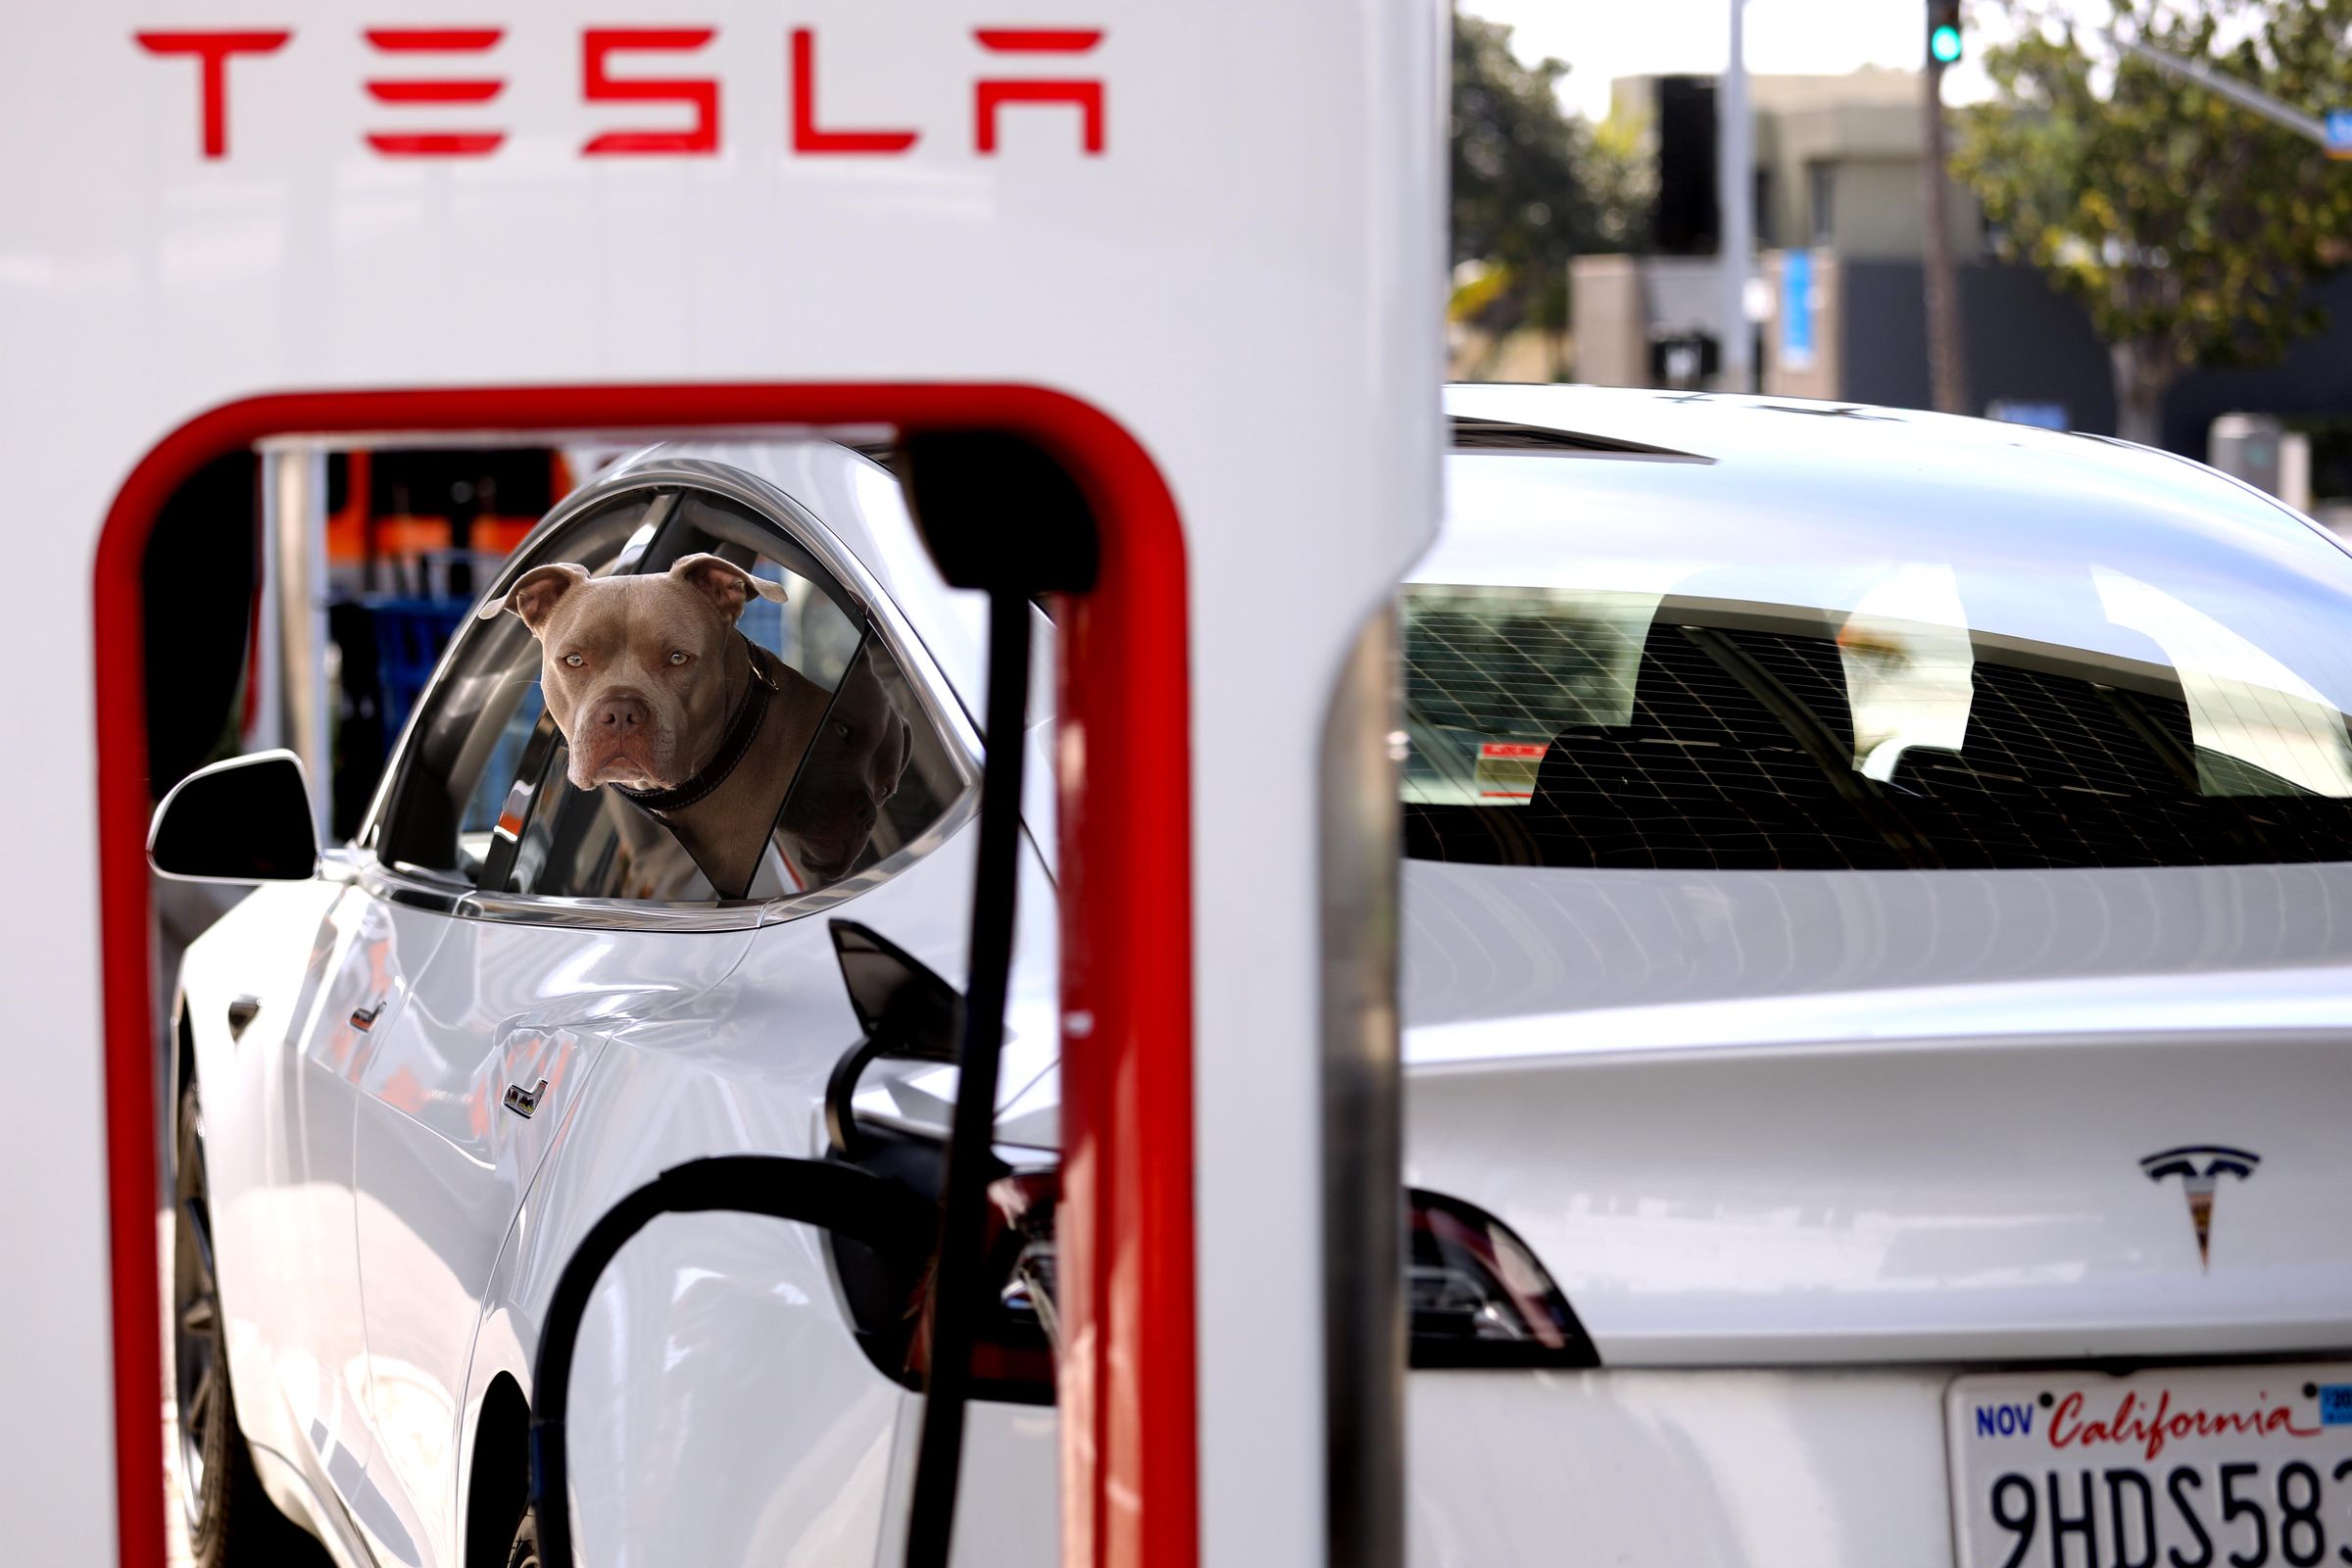 Tesla, supercharger stations